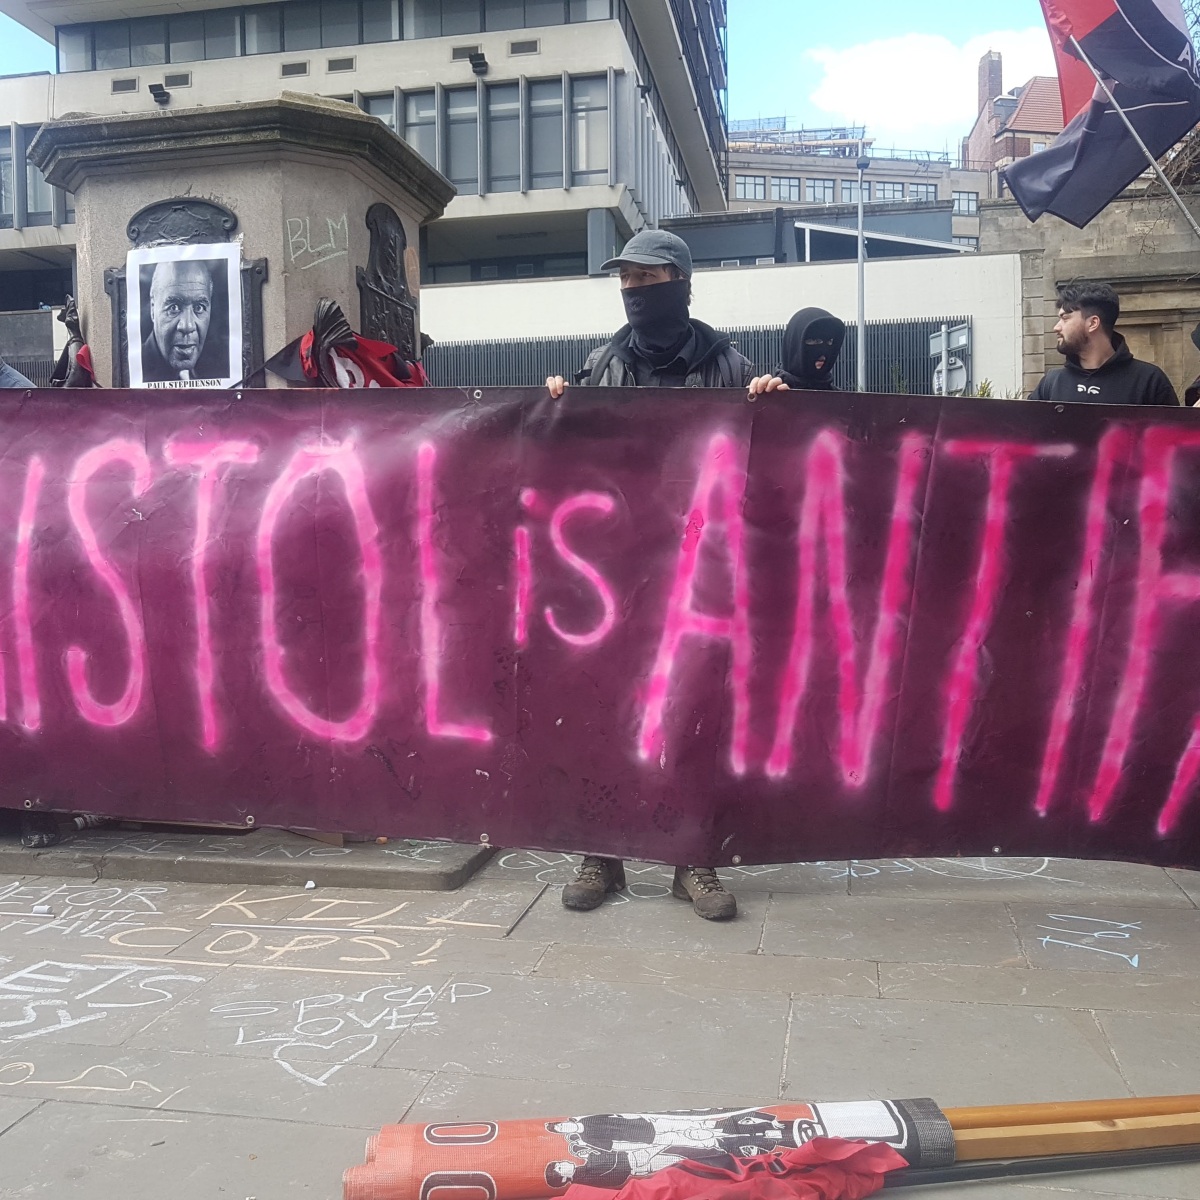 Banner reads: "Bristol is Antifa"